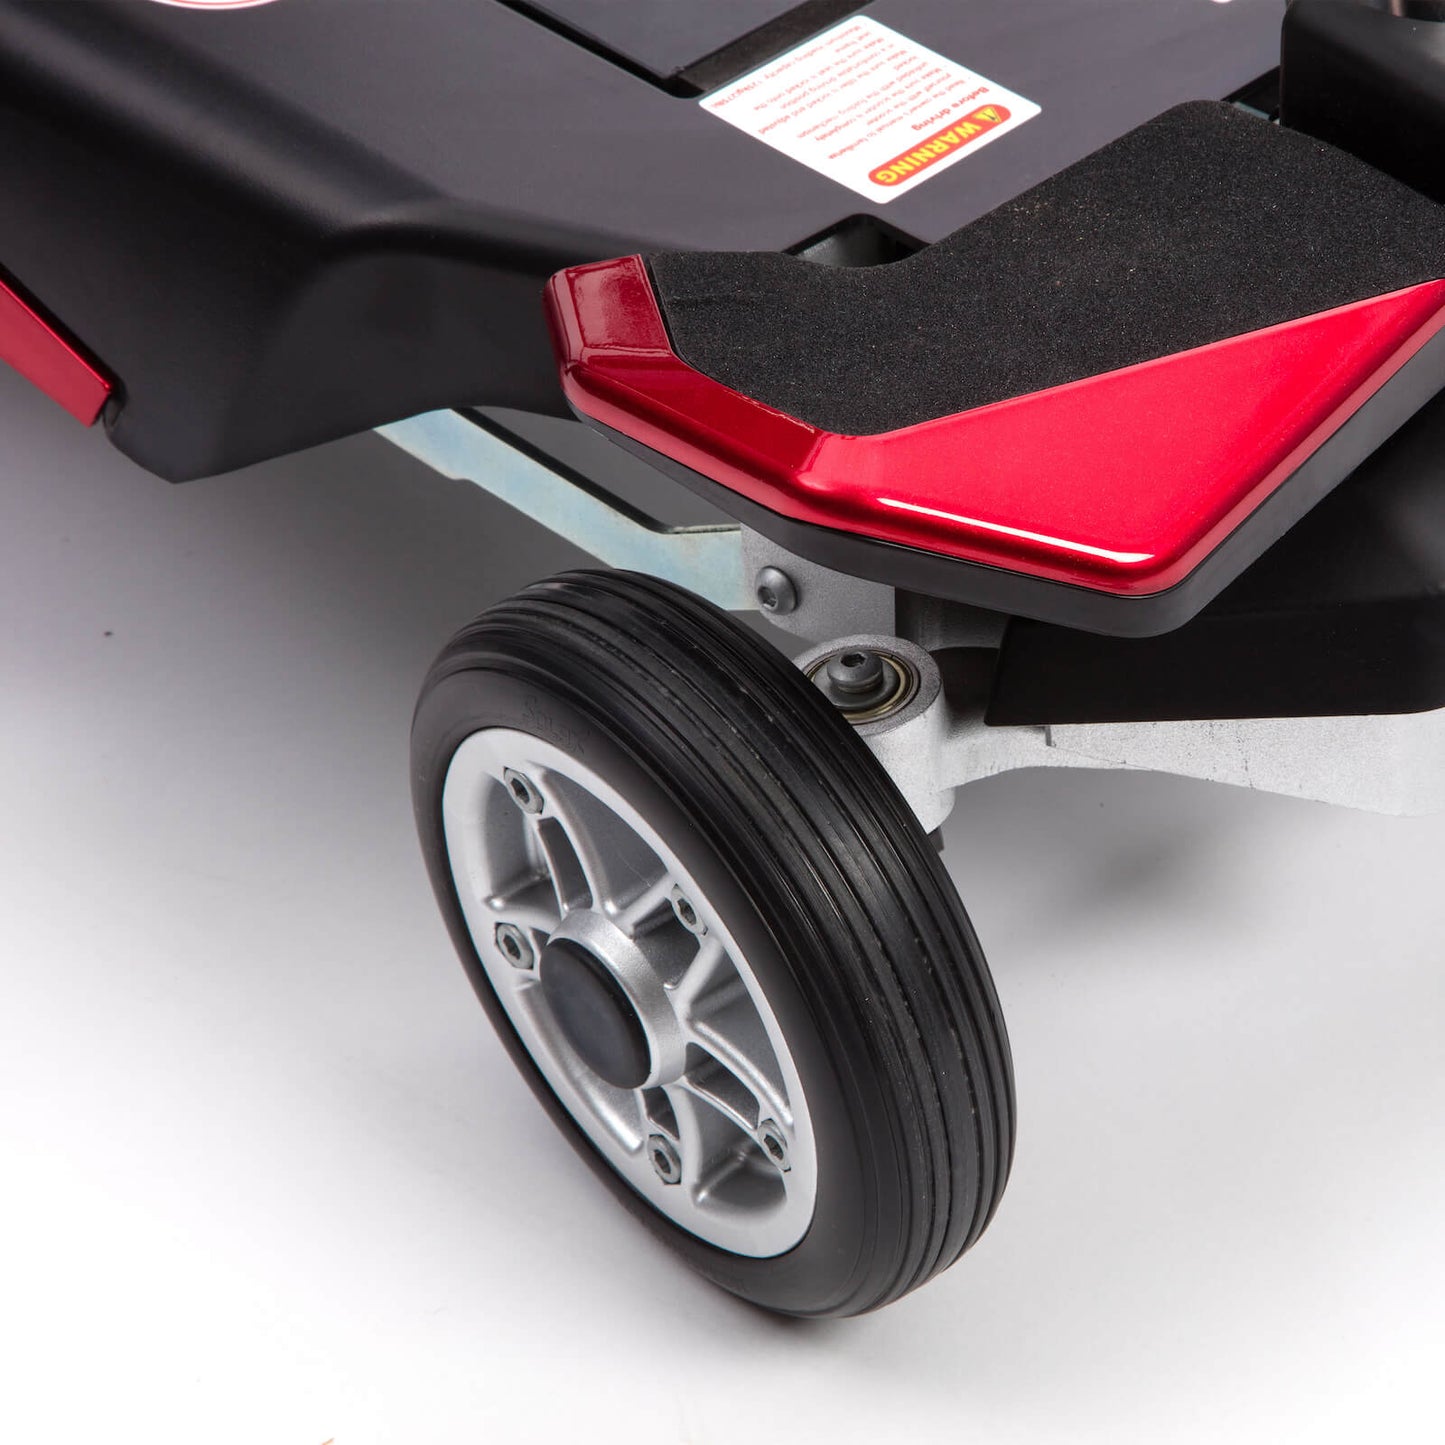 AutoFold Elite - Auto Folding Mobility Scooter